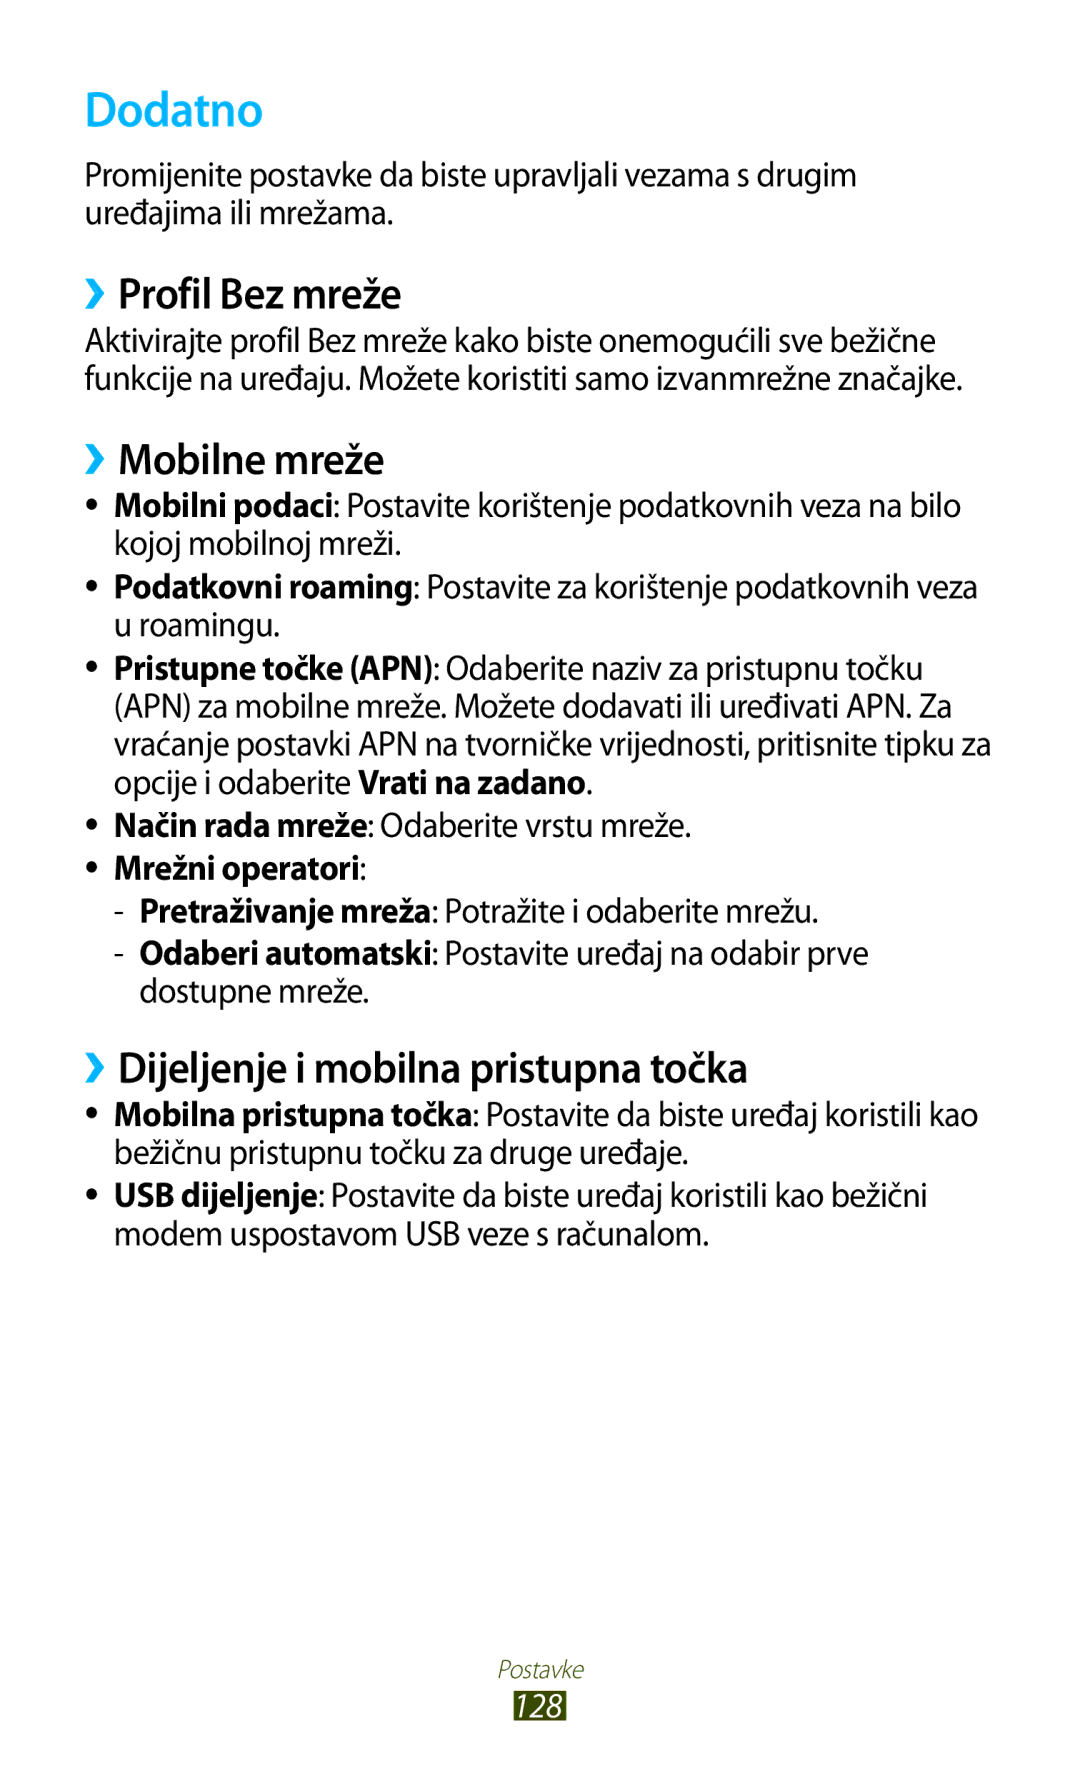 Samsung GT-S7560UWATWO manual Dodatno, ››Profil Bez mreže, ››Mobilne mreže, ››Dijeljenje i mobilna pristupna točka, 128 